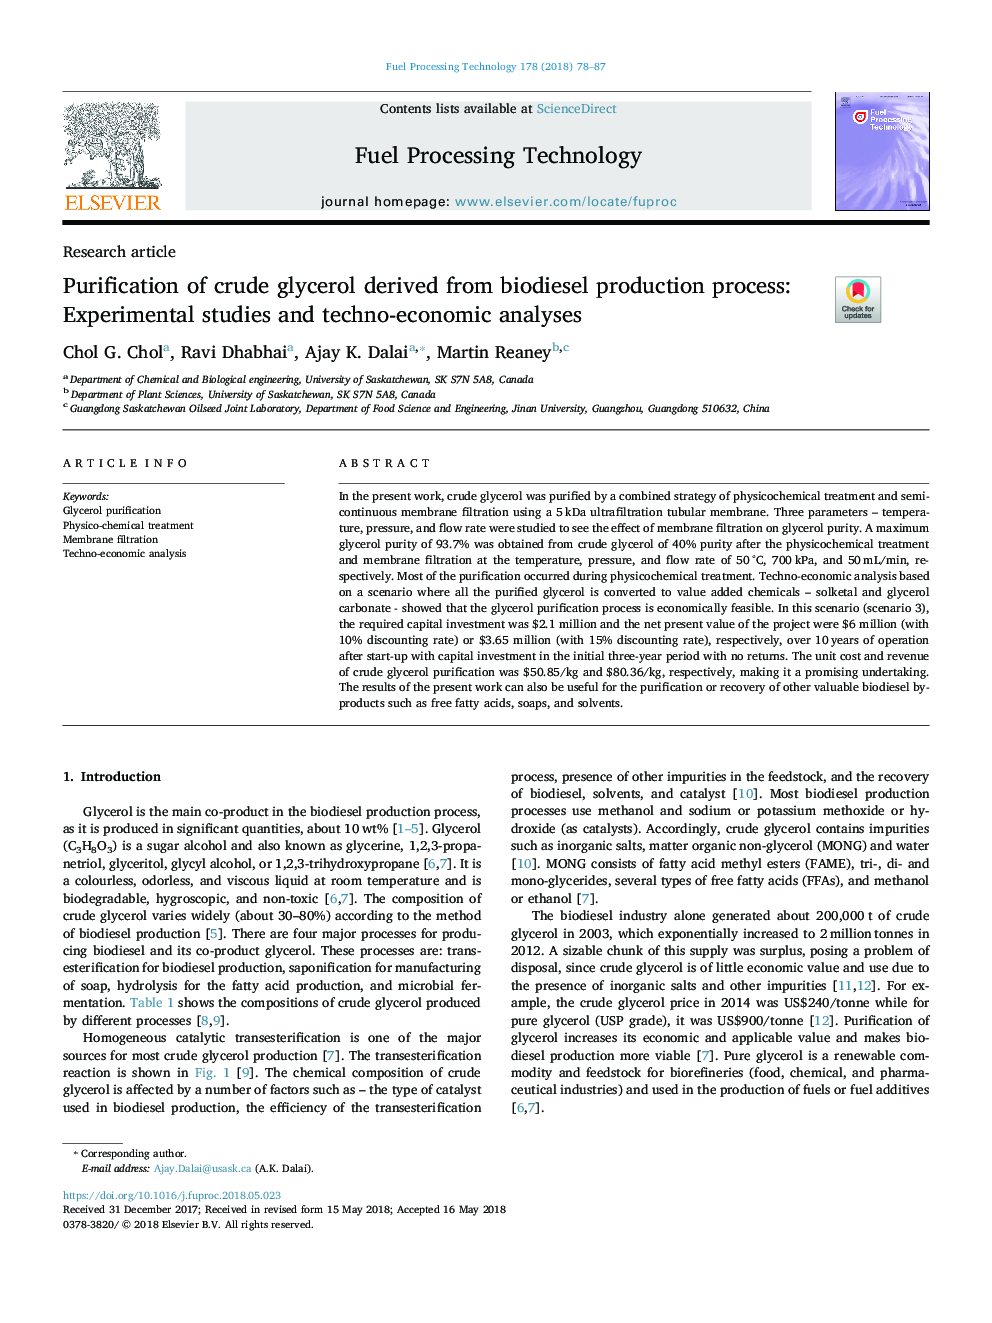 خالص سازی گلیسرول خام حاصل از فرایند تولید بیودیزل: مطالعات تجربی و تجزیه و تحلیل های فنی و اقتصادی 